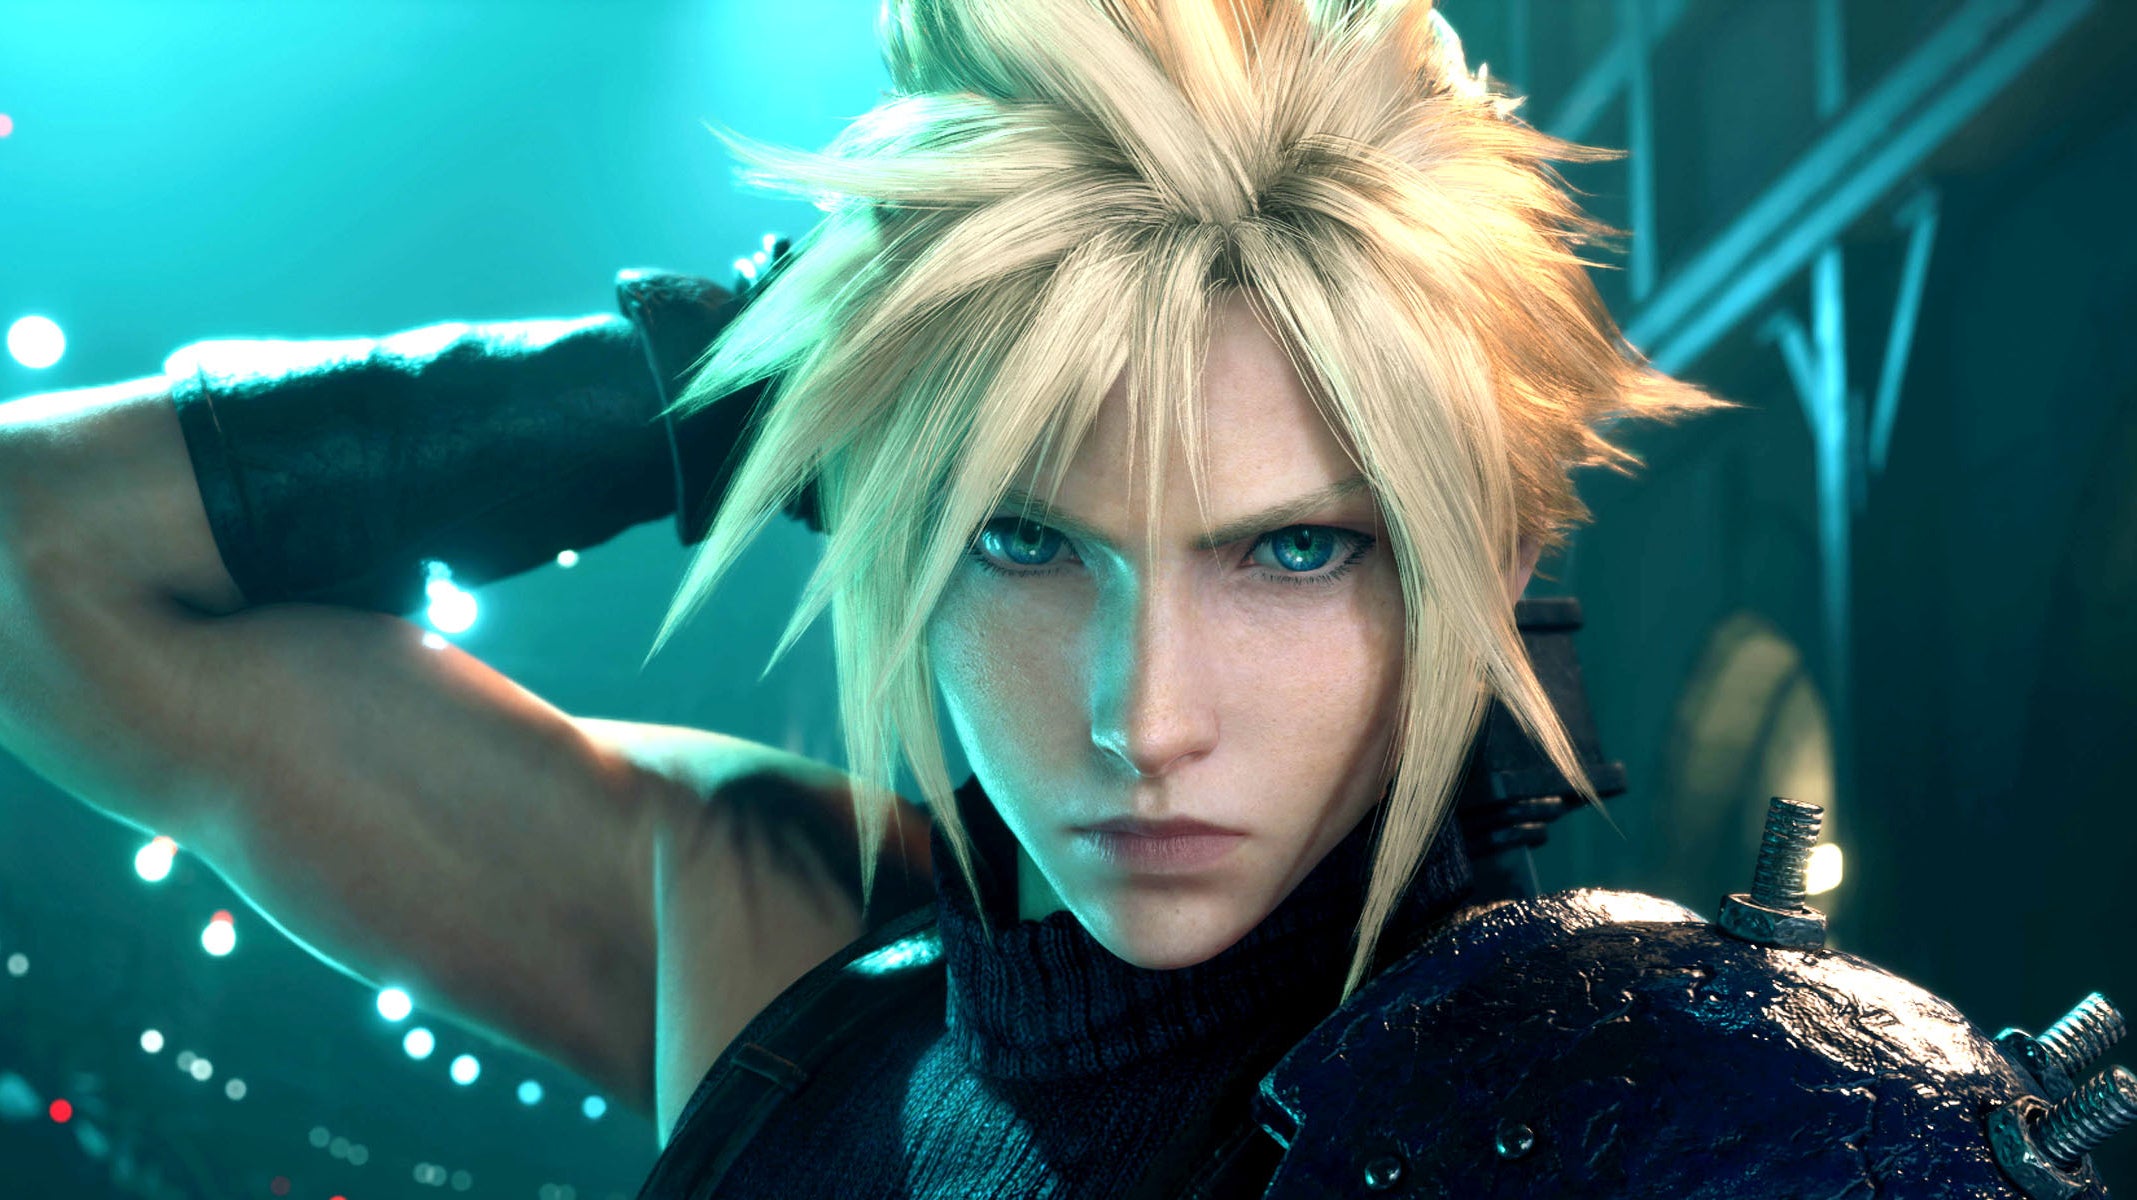 Bilder zu Final Fantasy 7 Remake auf PC ist eine enttäuschende Portierung